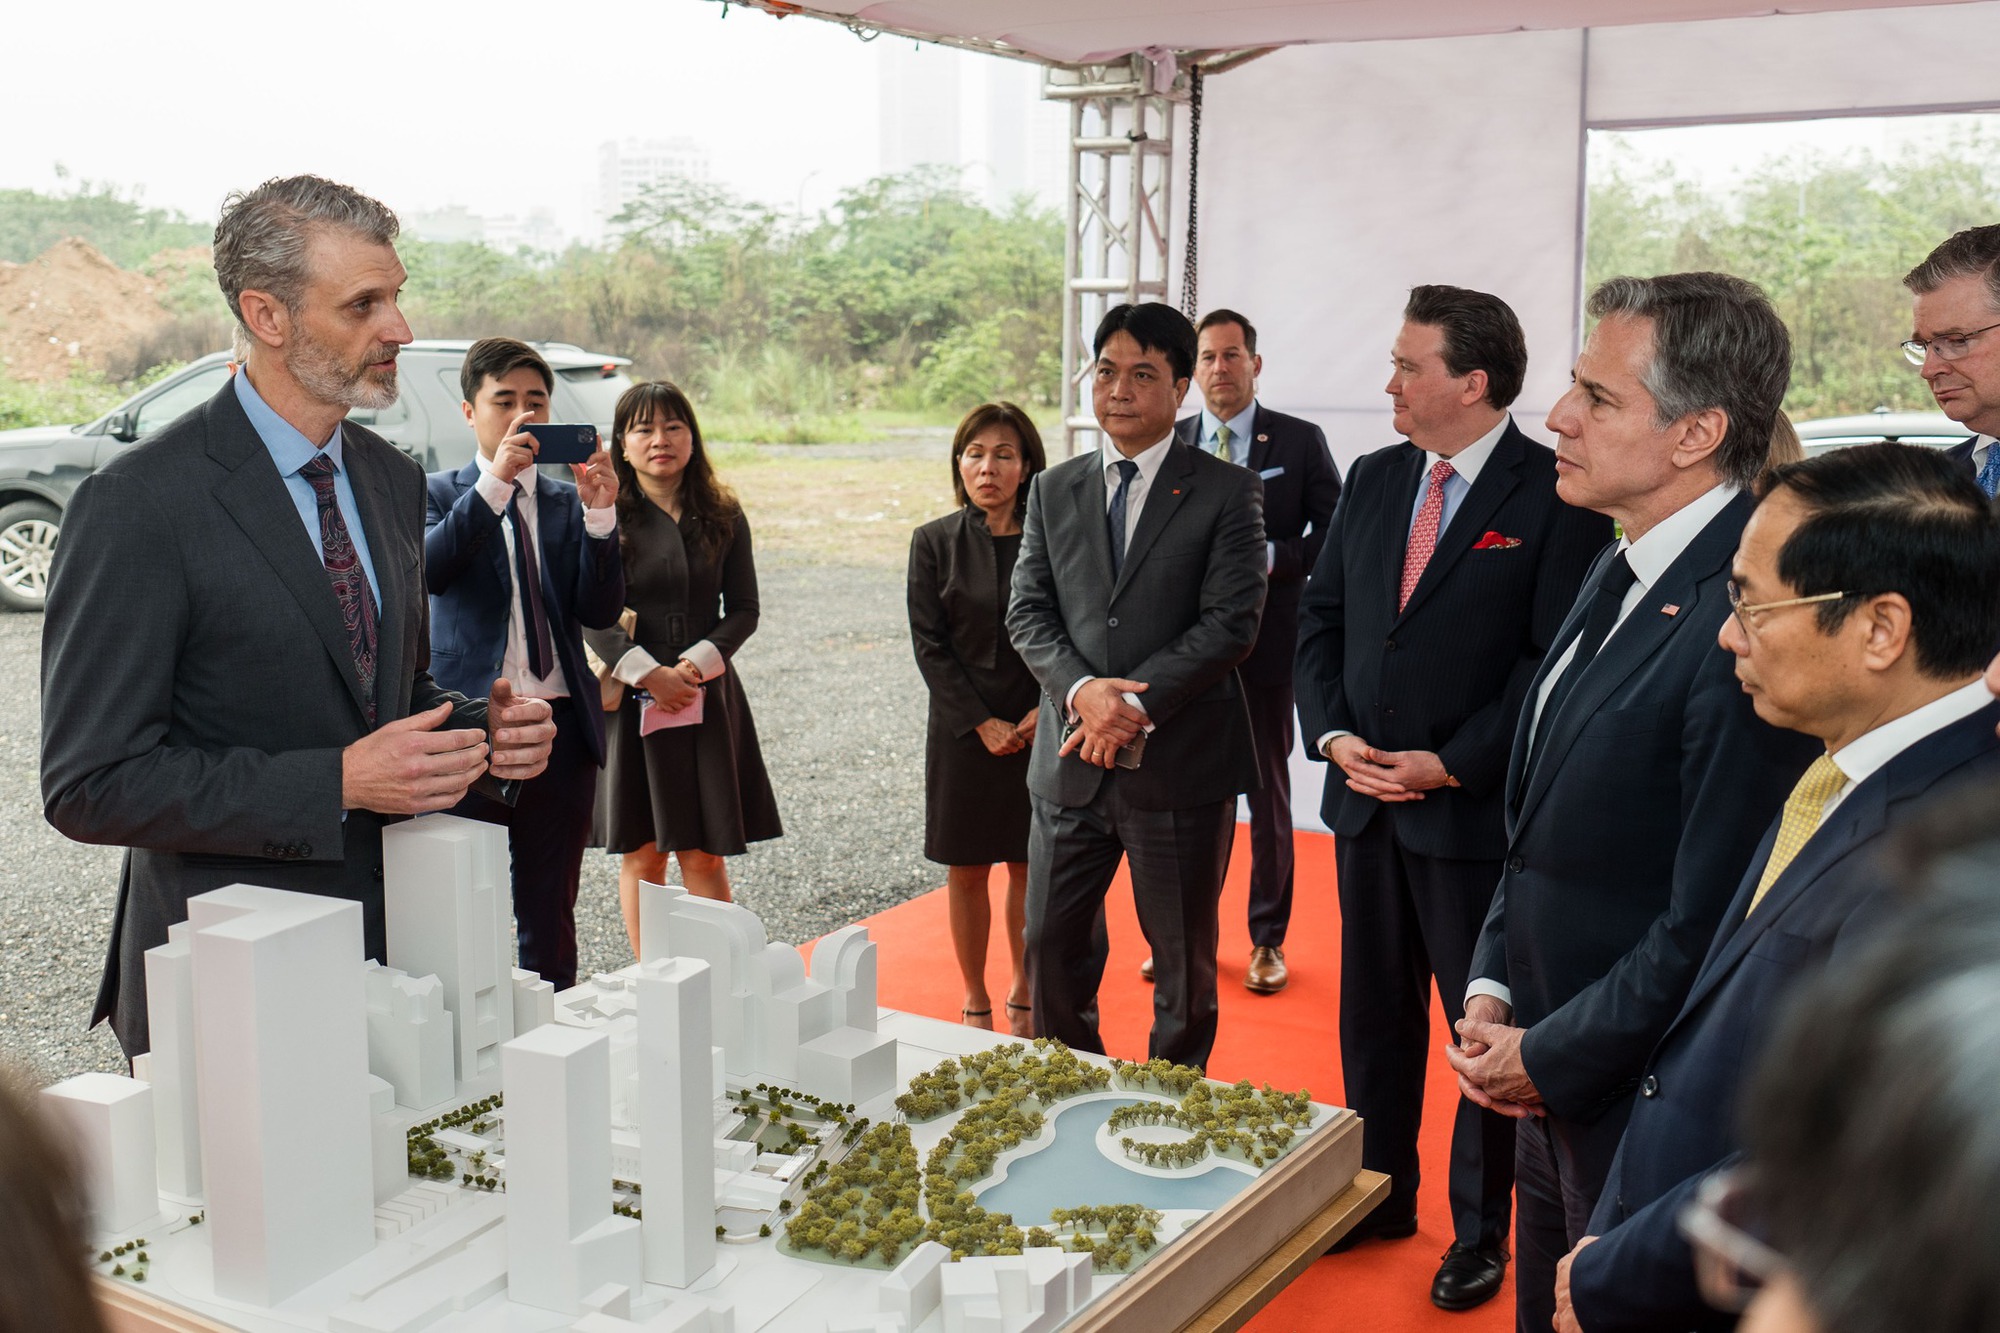 Ngoại trưởng Antony Blinken dự lễ khởi công trụ sở mới Đại sứ quán Hoa Kỳ tại Hà Nội - Ảnh 1.